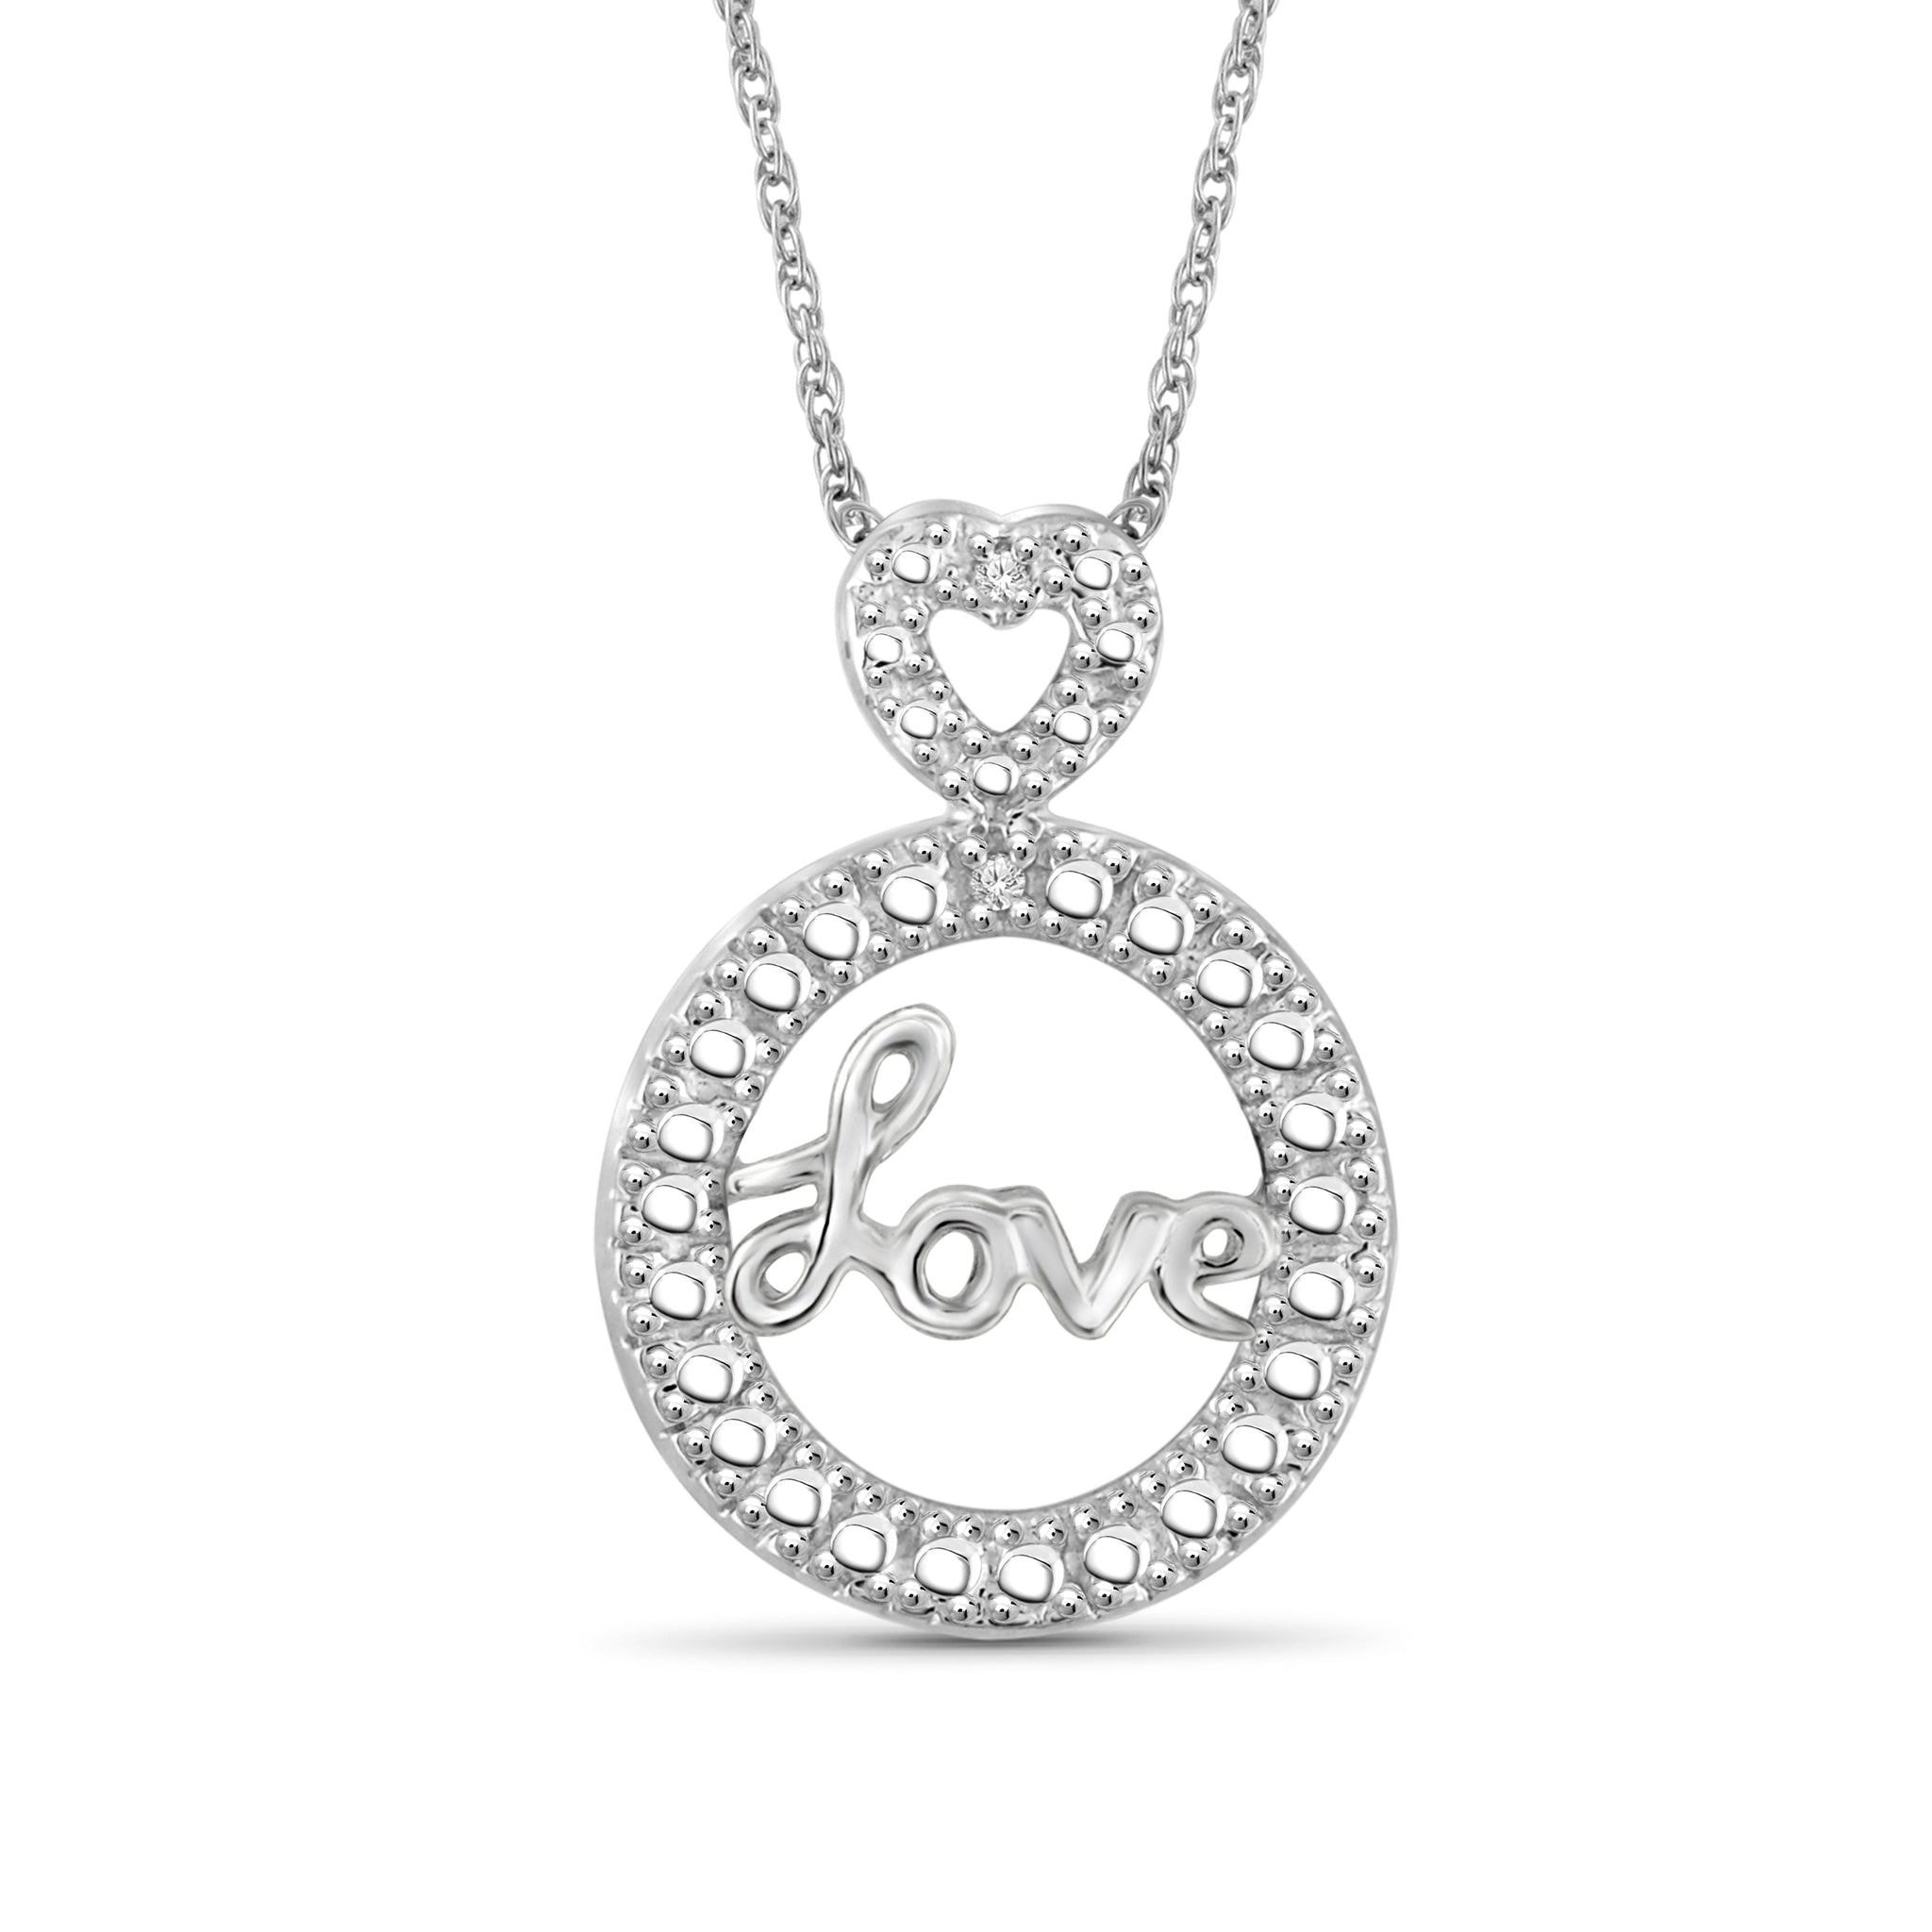 JewelonFire Accent White Diamond Love Pendant in Sterling Silver